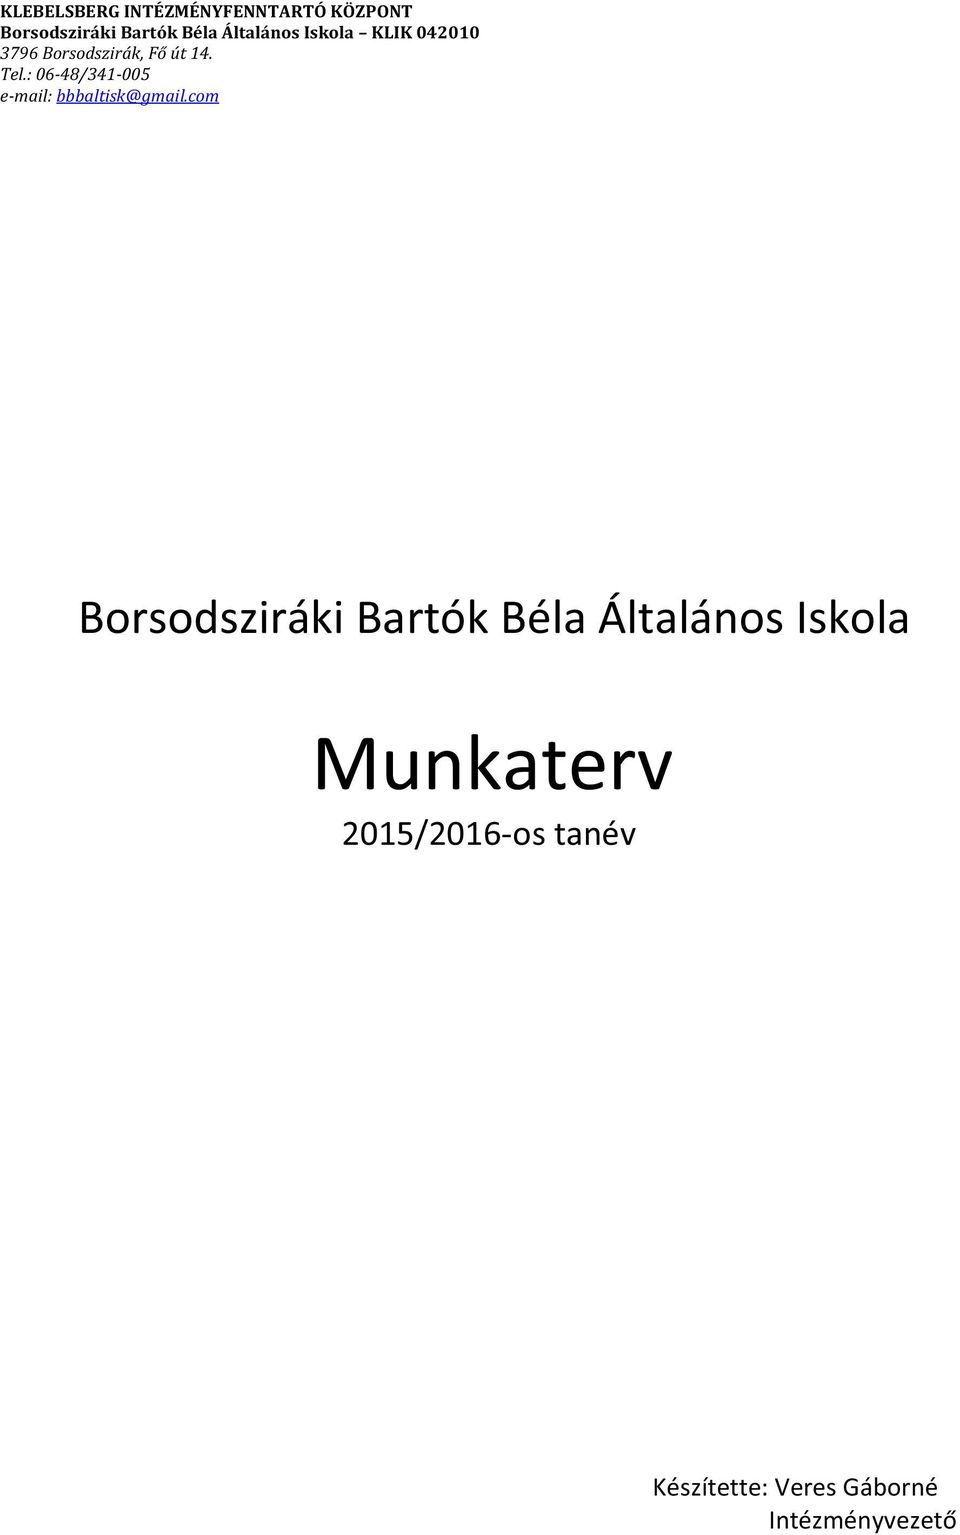 Munkaterv 2015/2016-os